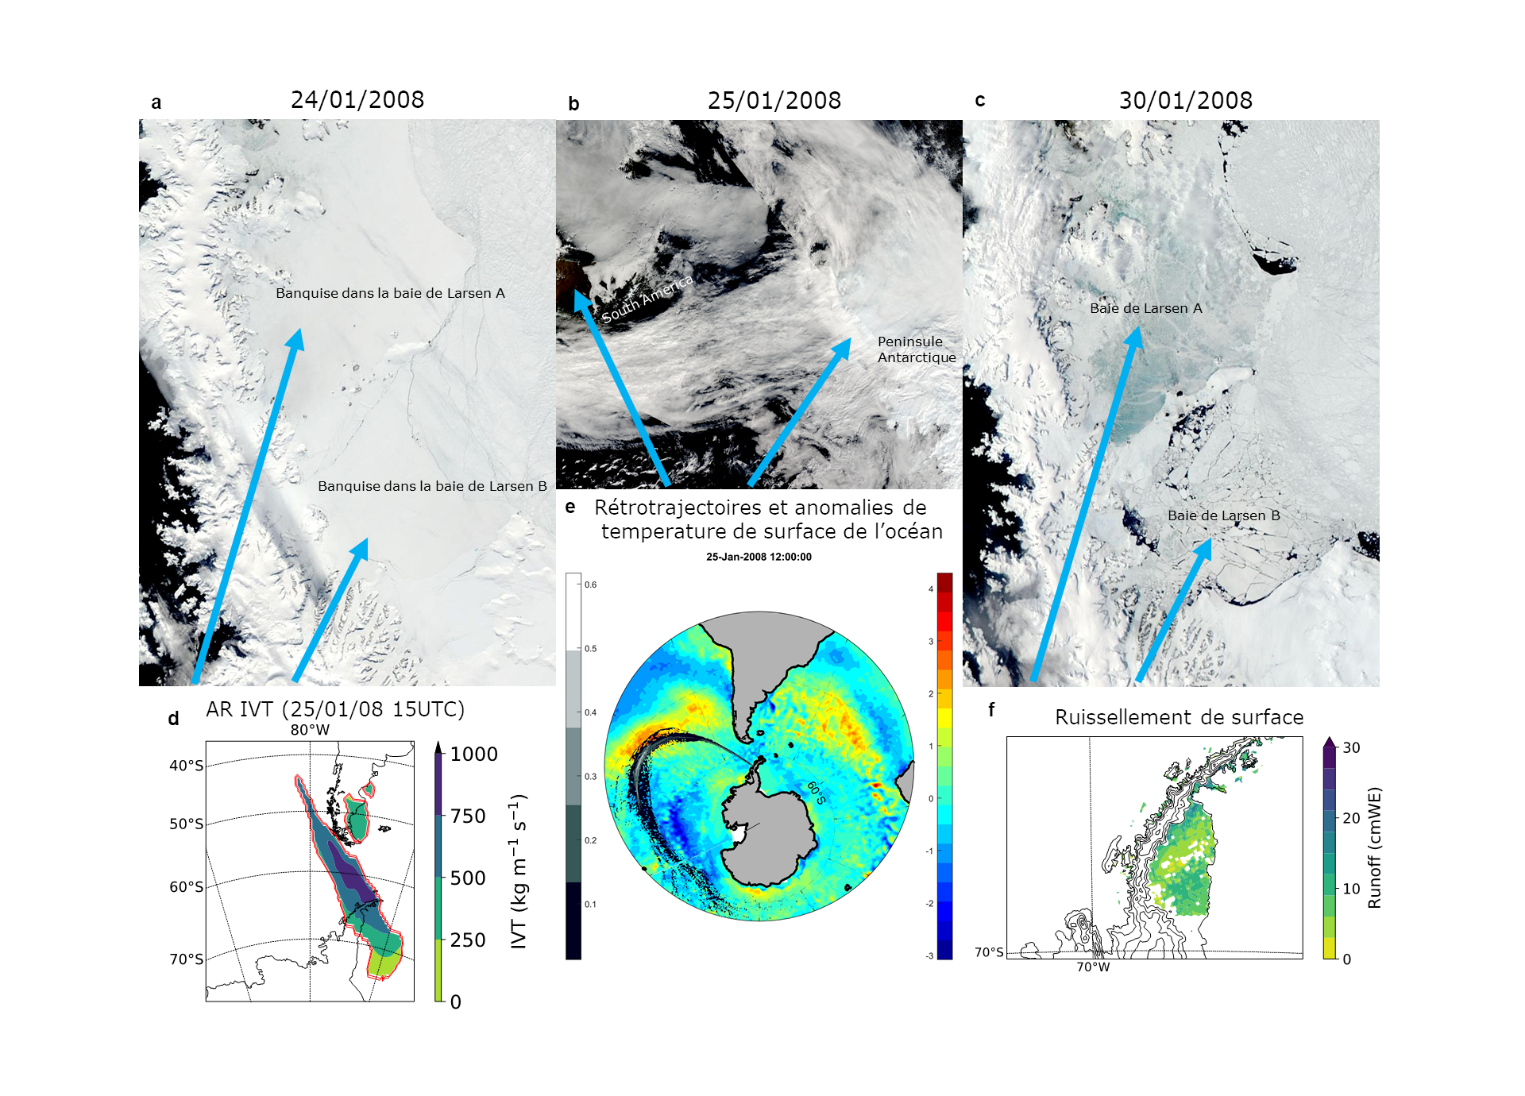 Figure 2 : Images satellite du 24/01/2008 (figure a) et du 30/01/2008 (figure c) montrant la disparition de la banquise et après le passage d'une rivière atmosphérique observée le 25/01/2008 (figure b). 